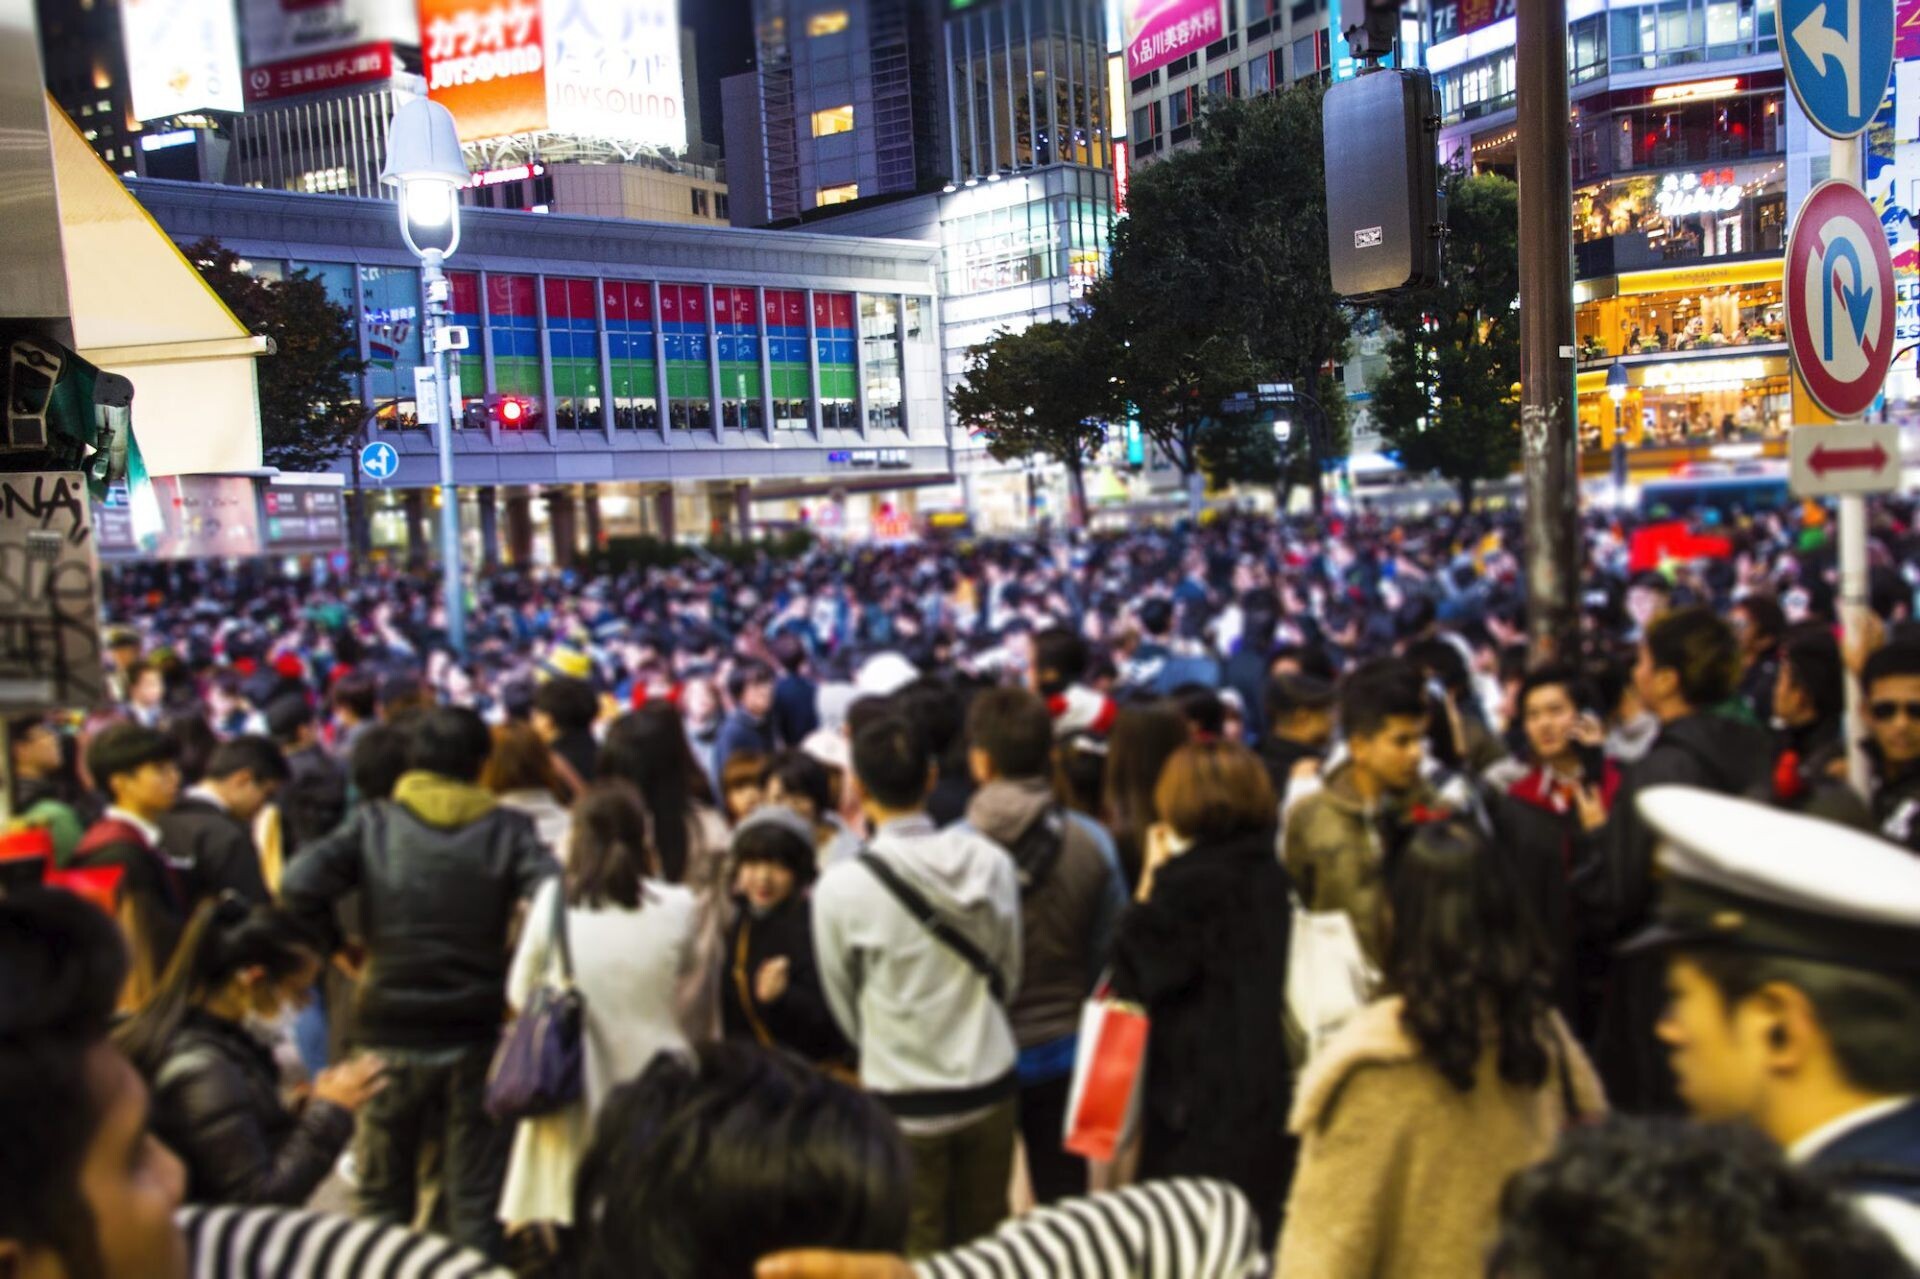 Iflyer 渋谷区 新型コロナウイルス感染拡大防止のため 今年のハロウィーンは渋谷に来ないよう呼びかけ 代わりに仮想空間 バーチャル渋谷 での ハロウィーンイベント開催を検討